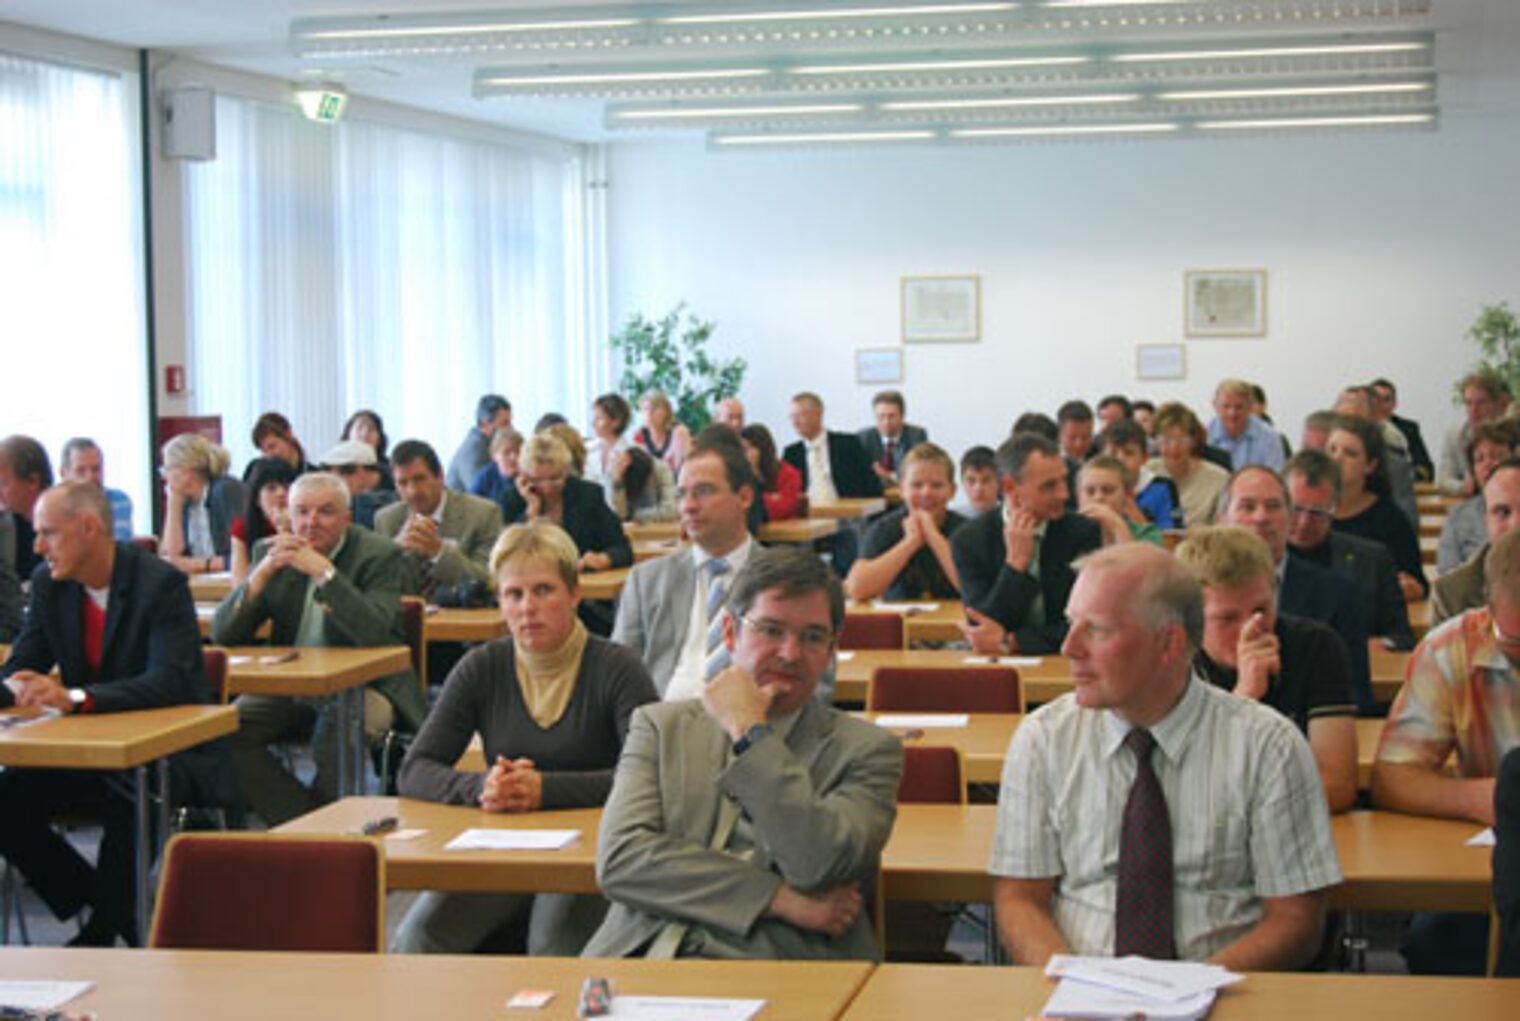 Auszeichnungsveranstaltung "Bewährter Ausbildungsbetrieb" 2009